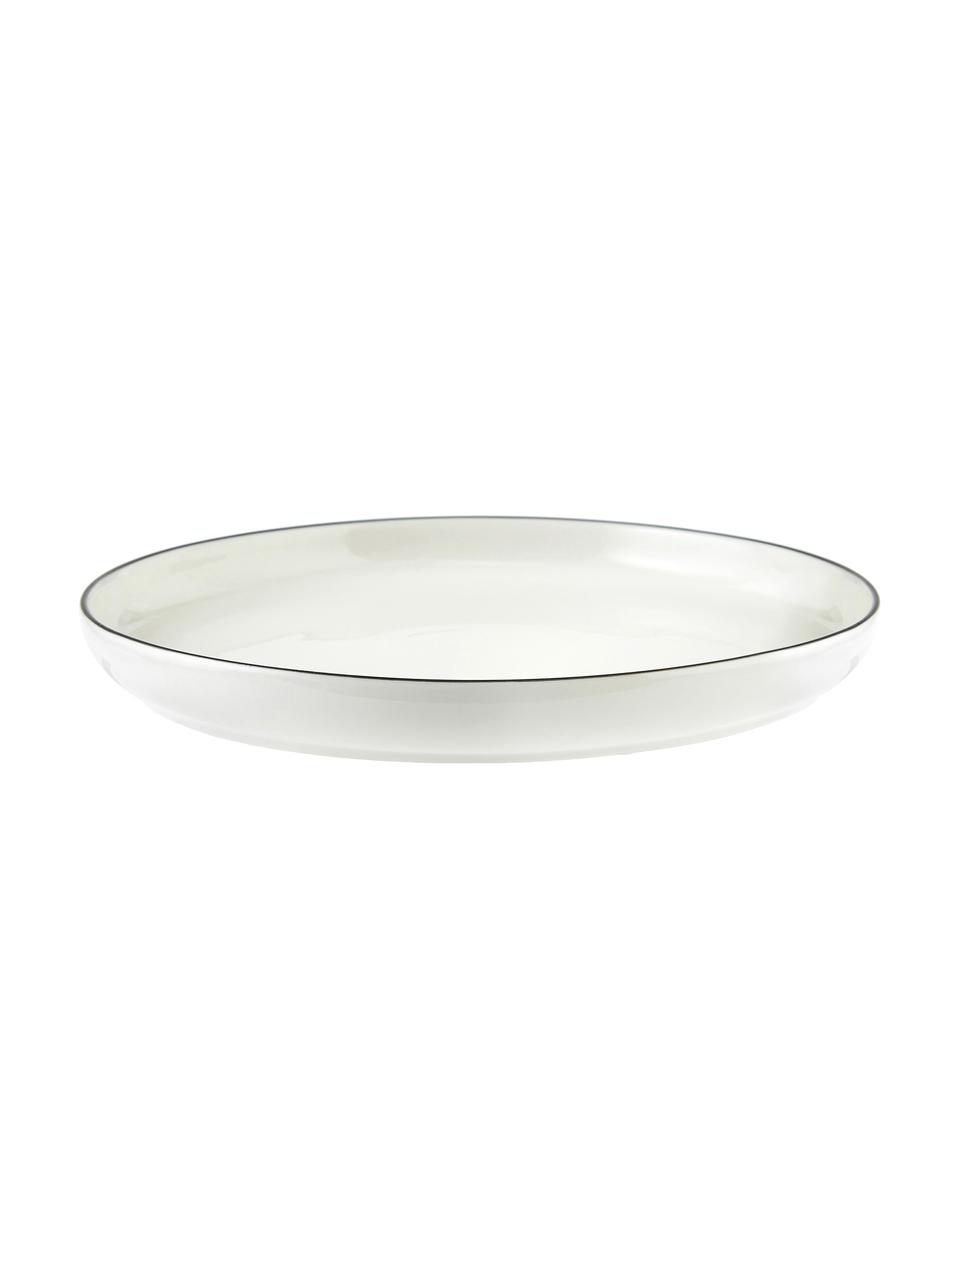 Sada porcelánového nádobí Facile, pro 6 osob (18 dílů), Vysoce kvalitní tvrdý porcelán (cca 50 % kaolinu, 25 % křemene a 25 % živce), Krémově bílá s černým okrajem, Pro 6 osob (18 dílů)